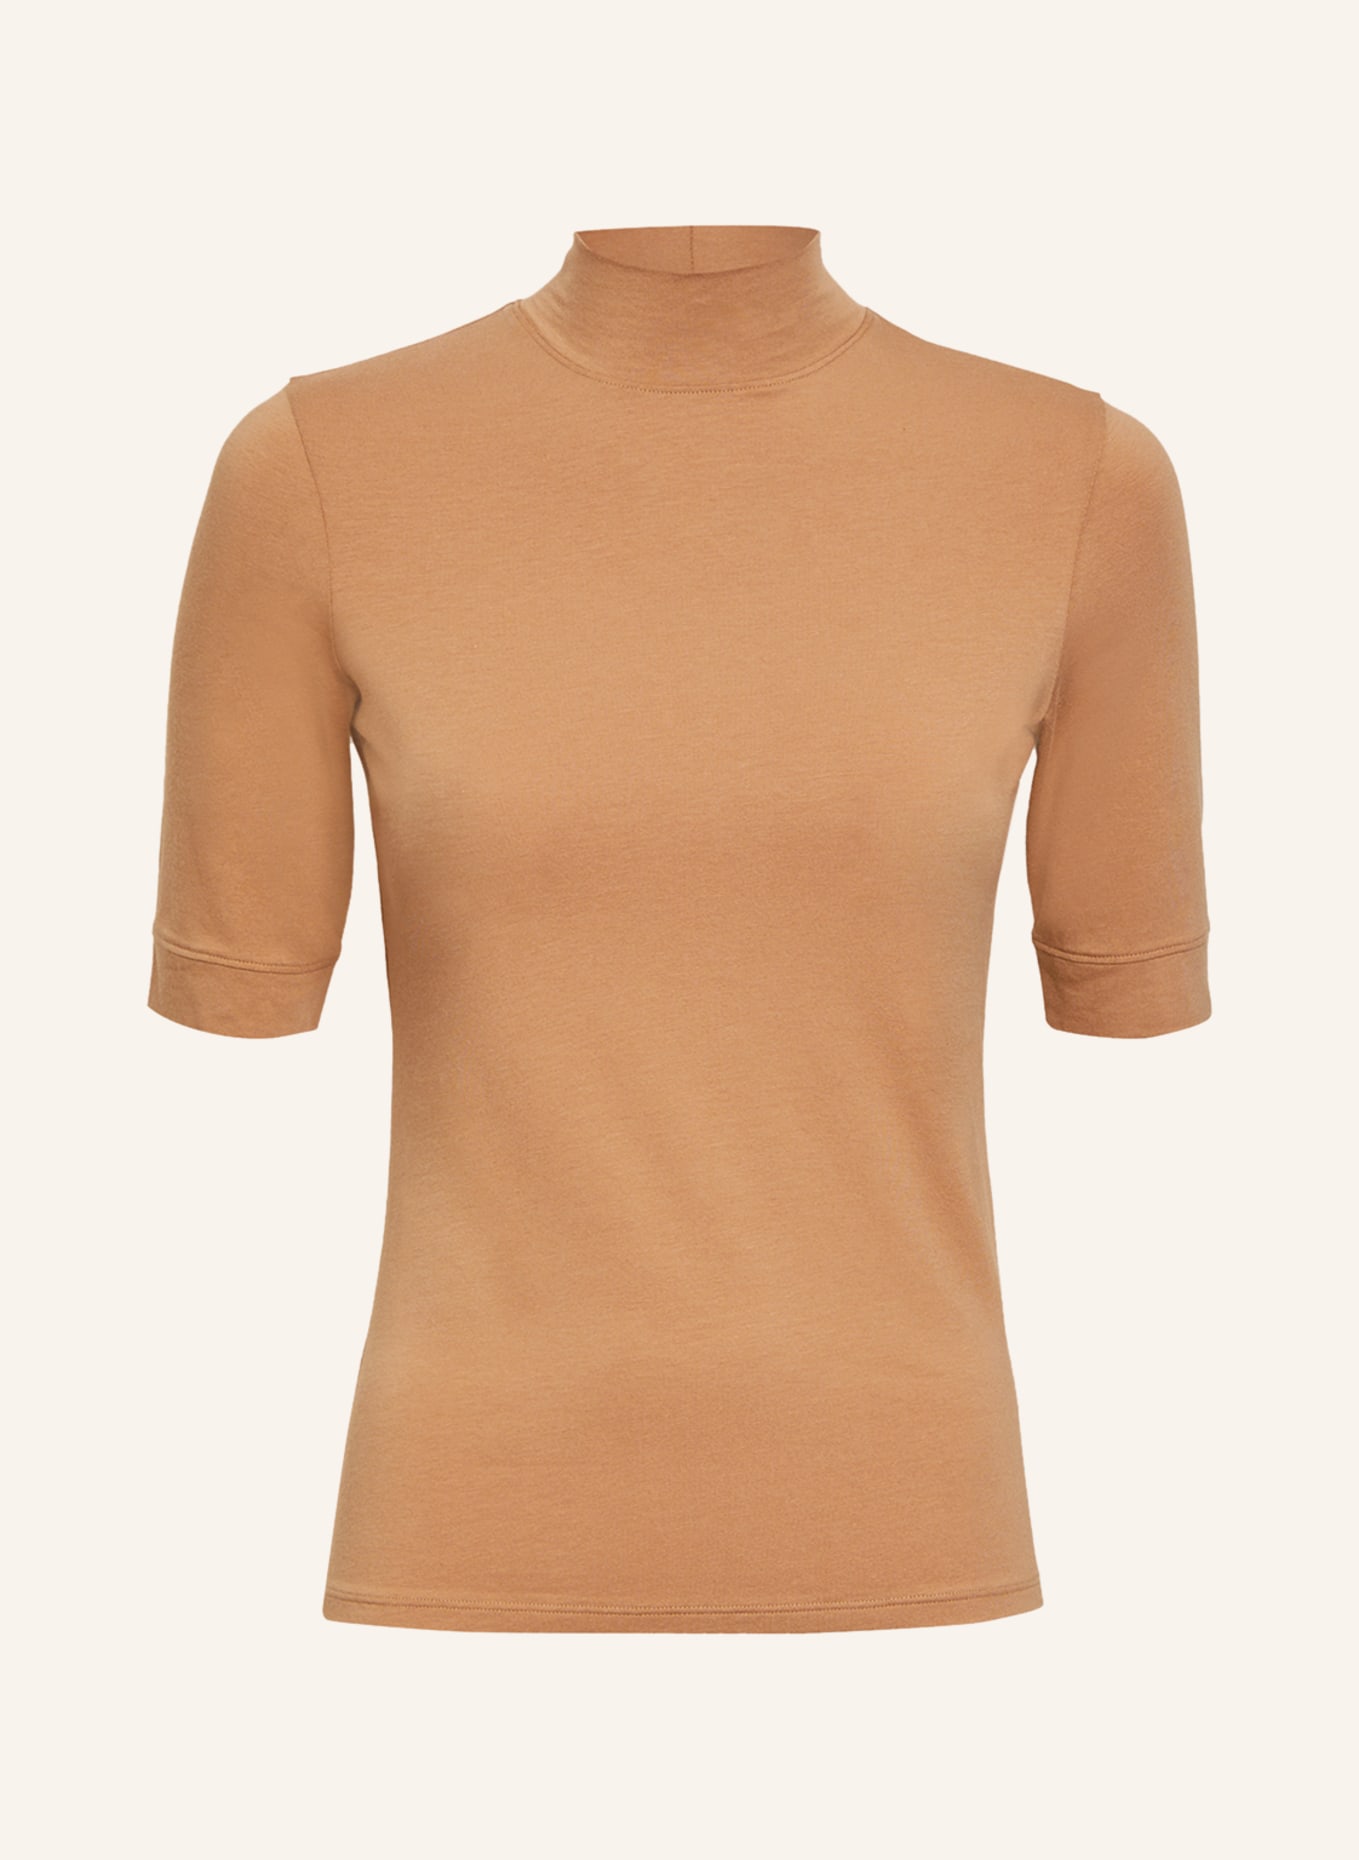 REISS T-Shirt BROOKLYN, Farbe: CAMEL (Bild 1)